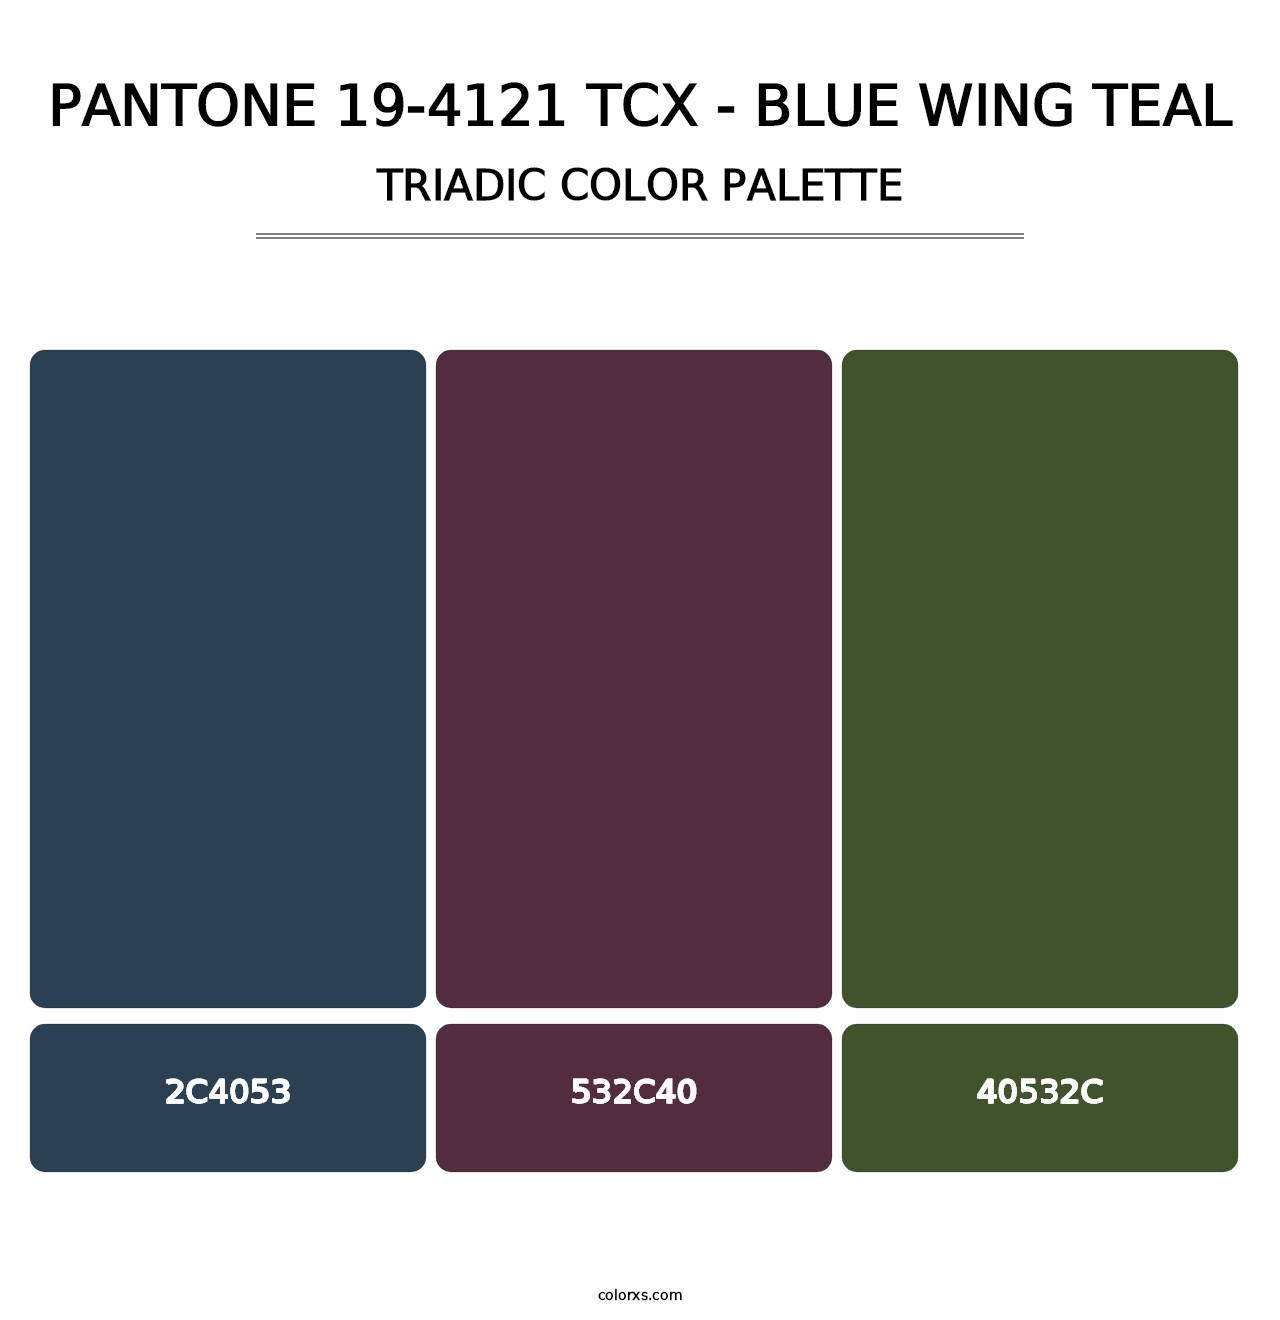 PANTONE 19-4121 TCX - Blue Wing Teal - Triadic Color Palette